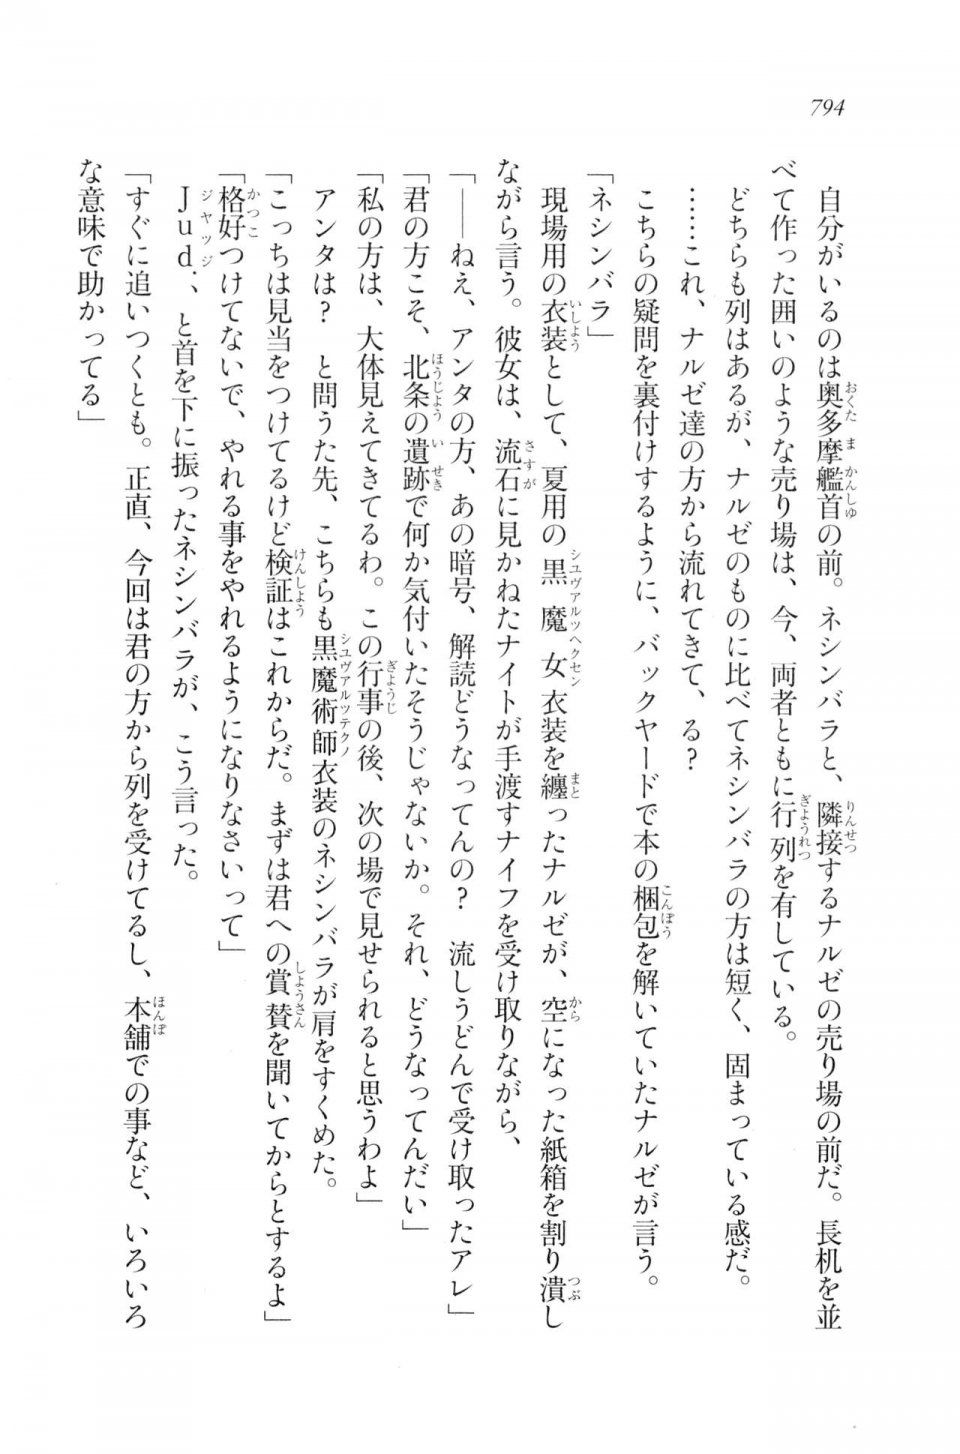 Kyoukai Senjou no Horizon LN Vol 20(8B) - Photo #794